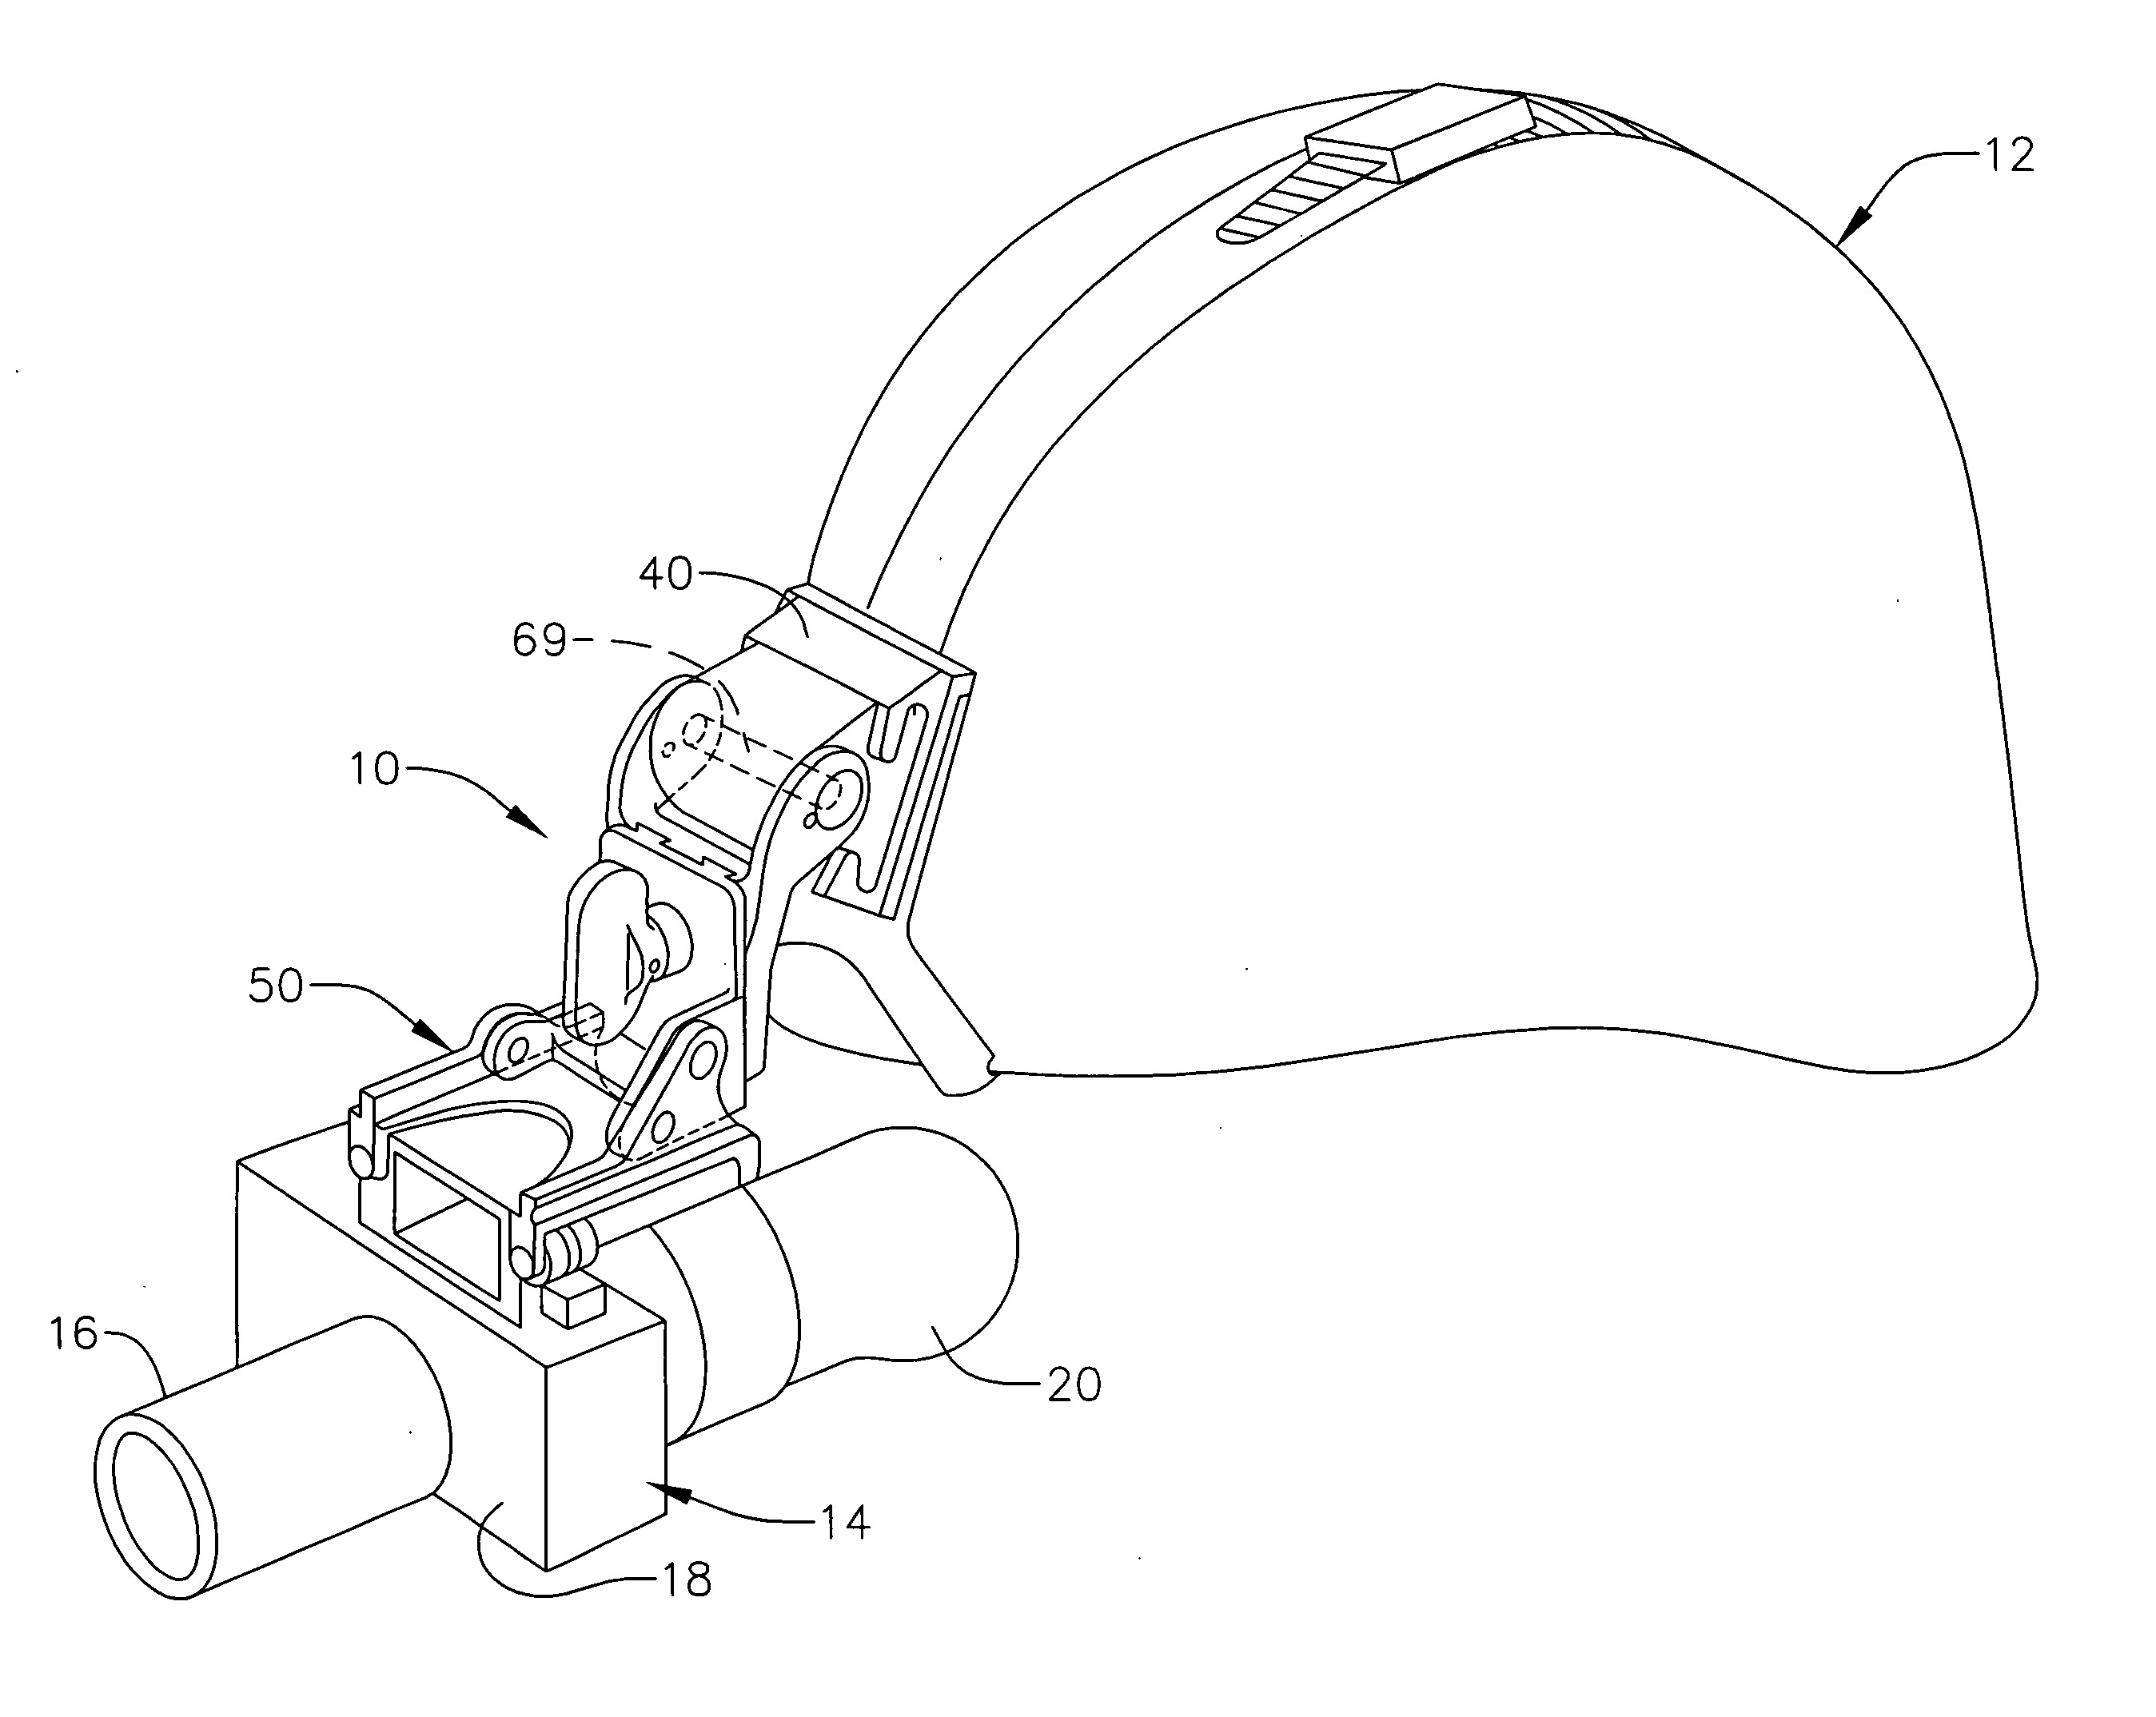 Vertical adjustment mechanism for helmet mount for night vision device